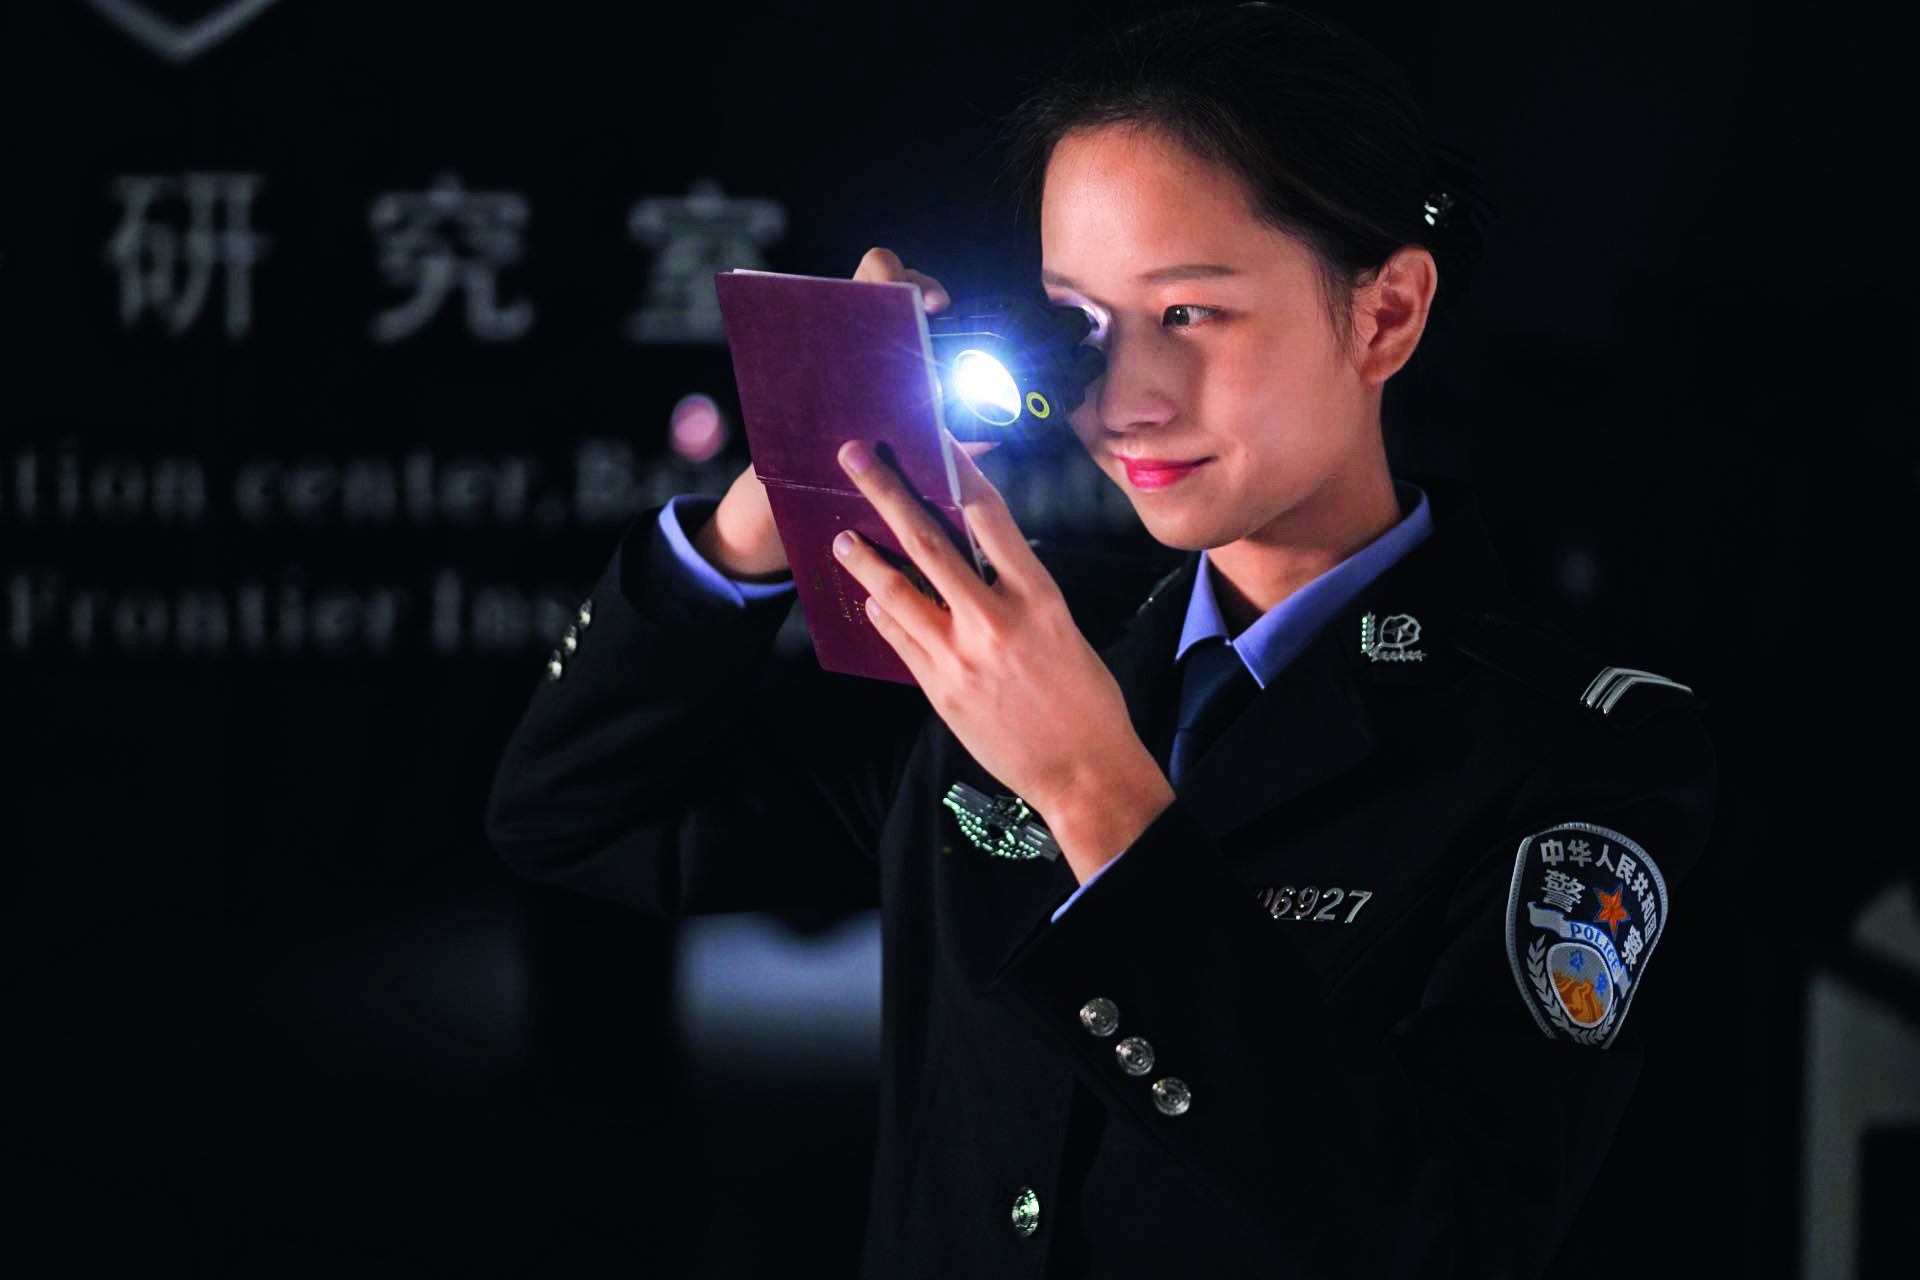 执勤三队民警使用便捷光电设备查勘证件.jpg